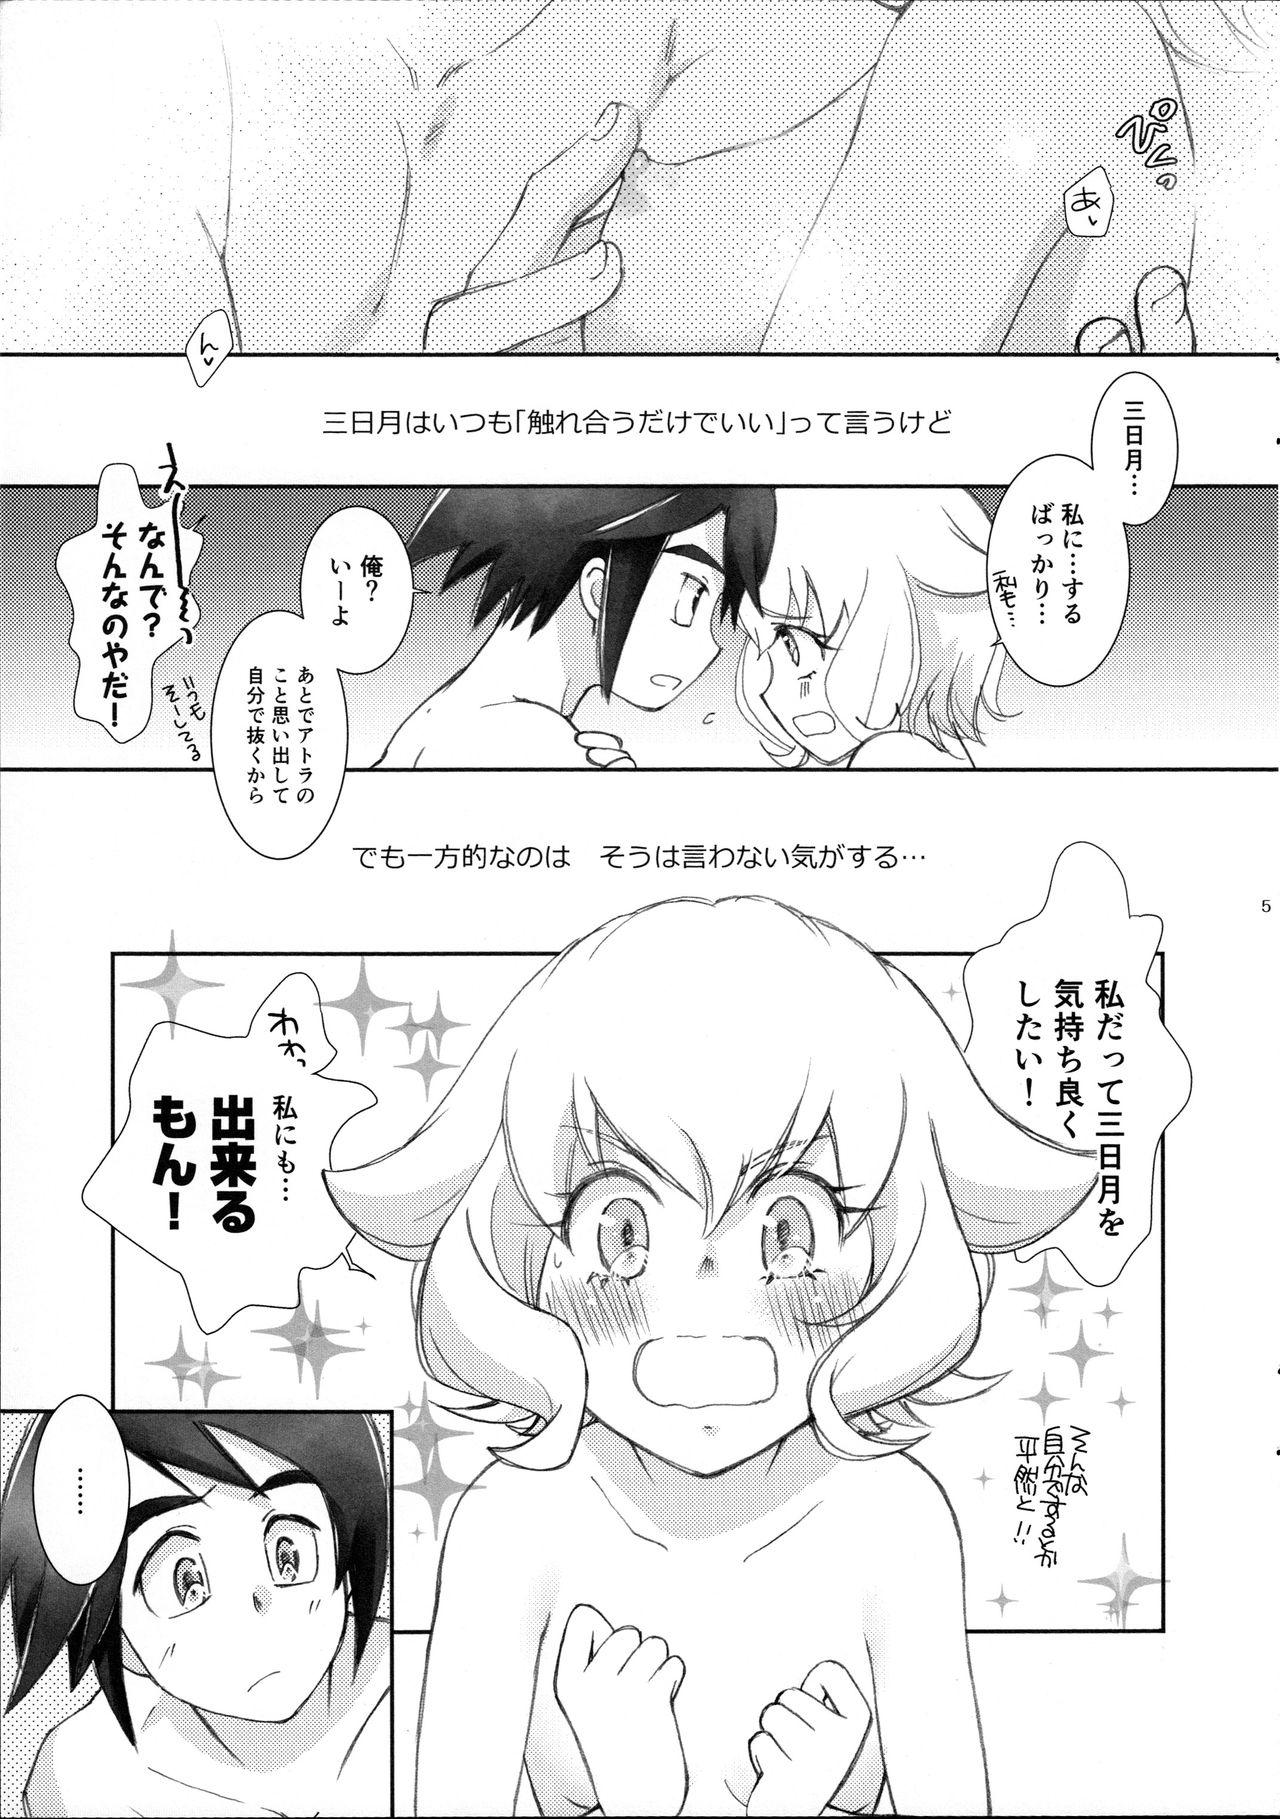 Shorts Mikazuki wa Itsumo Saigomade Shinai - Mobile suit gundam tekketsu no orphans Massage Sex - Page 4